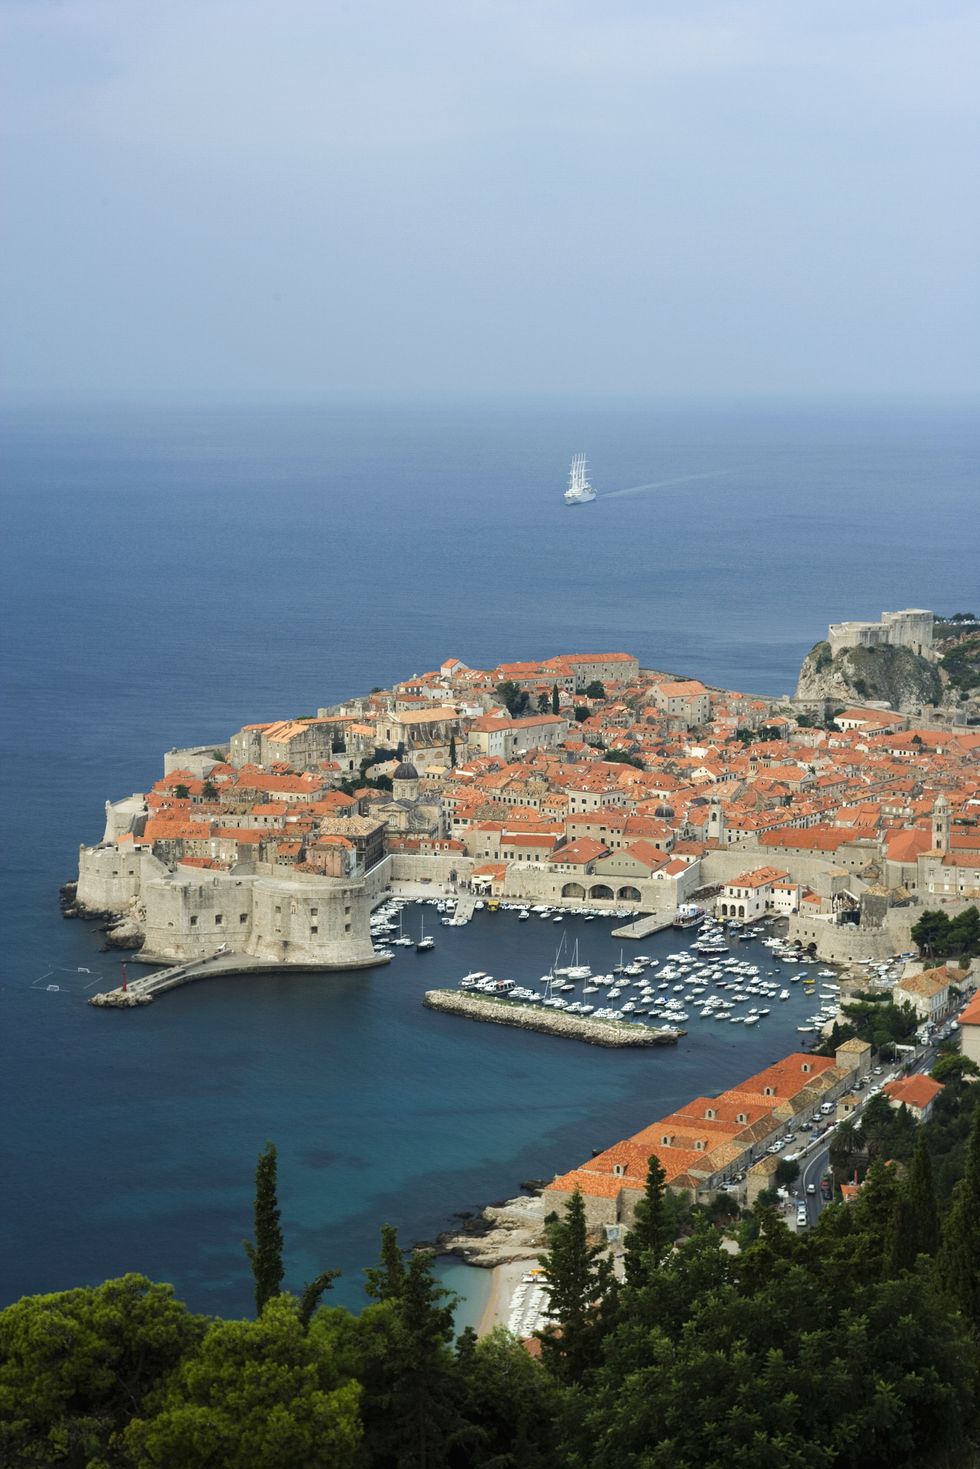 Dubrovnik, Croatia thị trấn ven biển DENNIS DEGNAN GETTY HÌNH ẢNH Dubrovnik nằm trên Biển Adriatic và tự hào về cả kỳ nghỉ và cuộc phiêu lưu trong thành phố. Từ làn nước trong vắt và những bãi biển hẻo lánh đến rượu vang địa phương đáng kinh ngạc và lịch sử văn hóa phong phú vô tận, có quá nhiều thứ để trải nghiệm ở thành phố nhộn nhịp này.